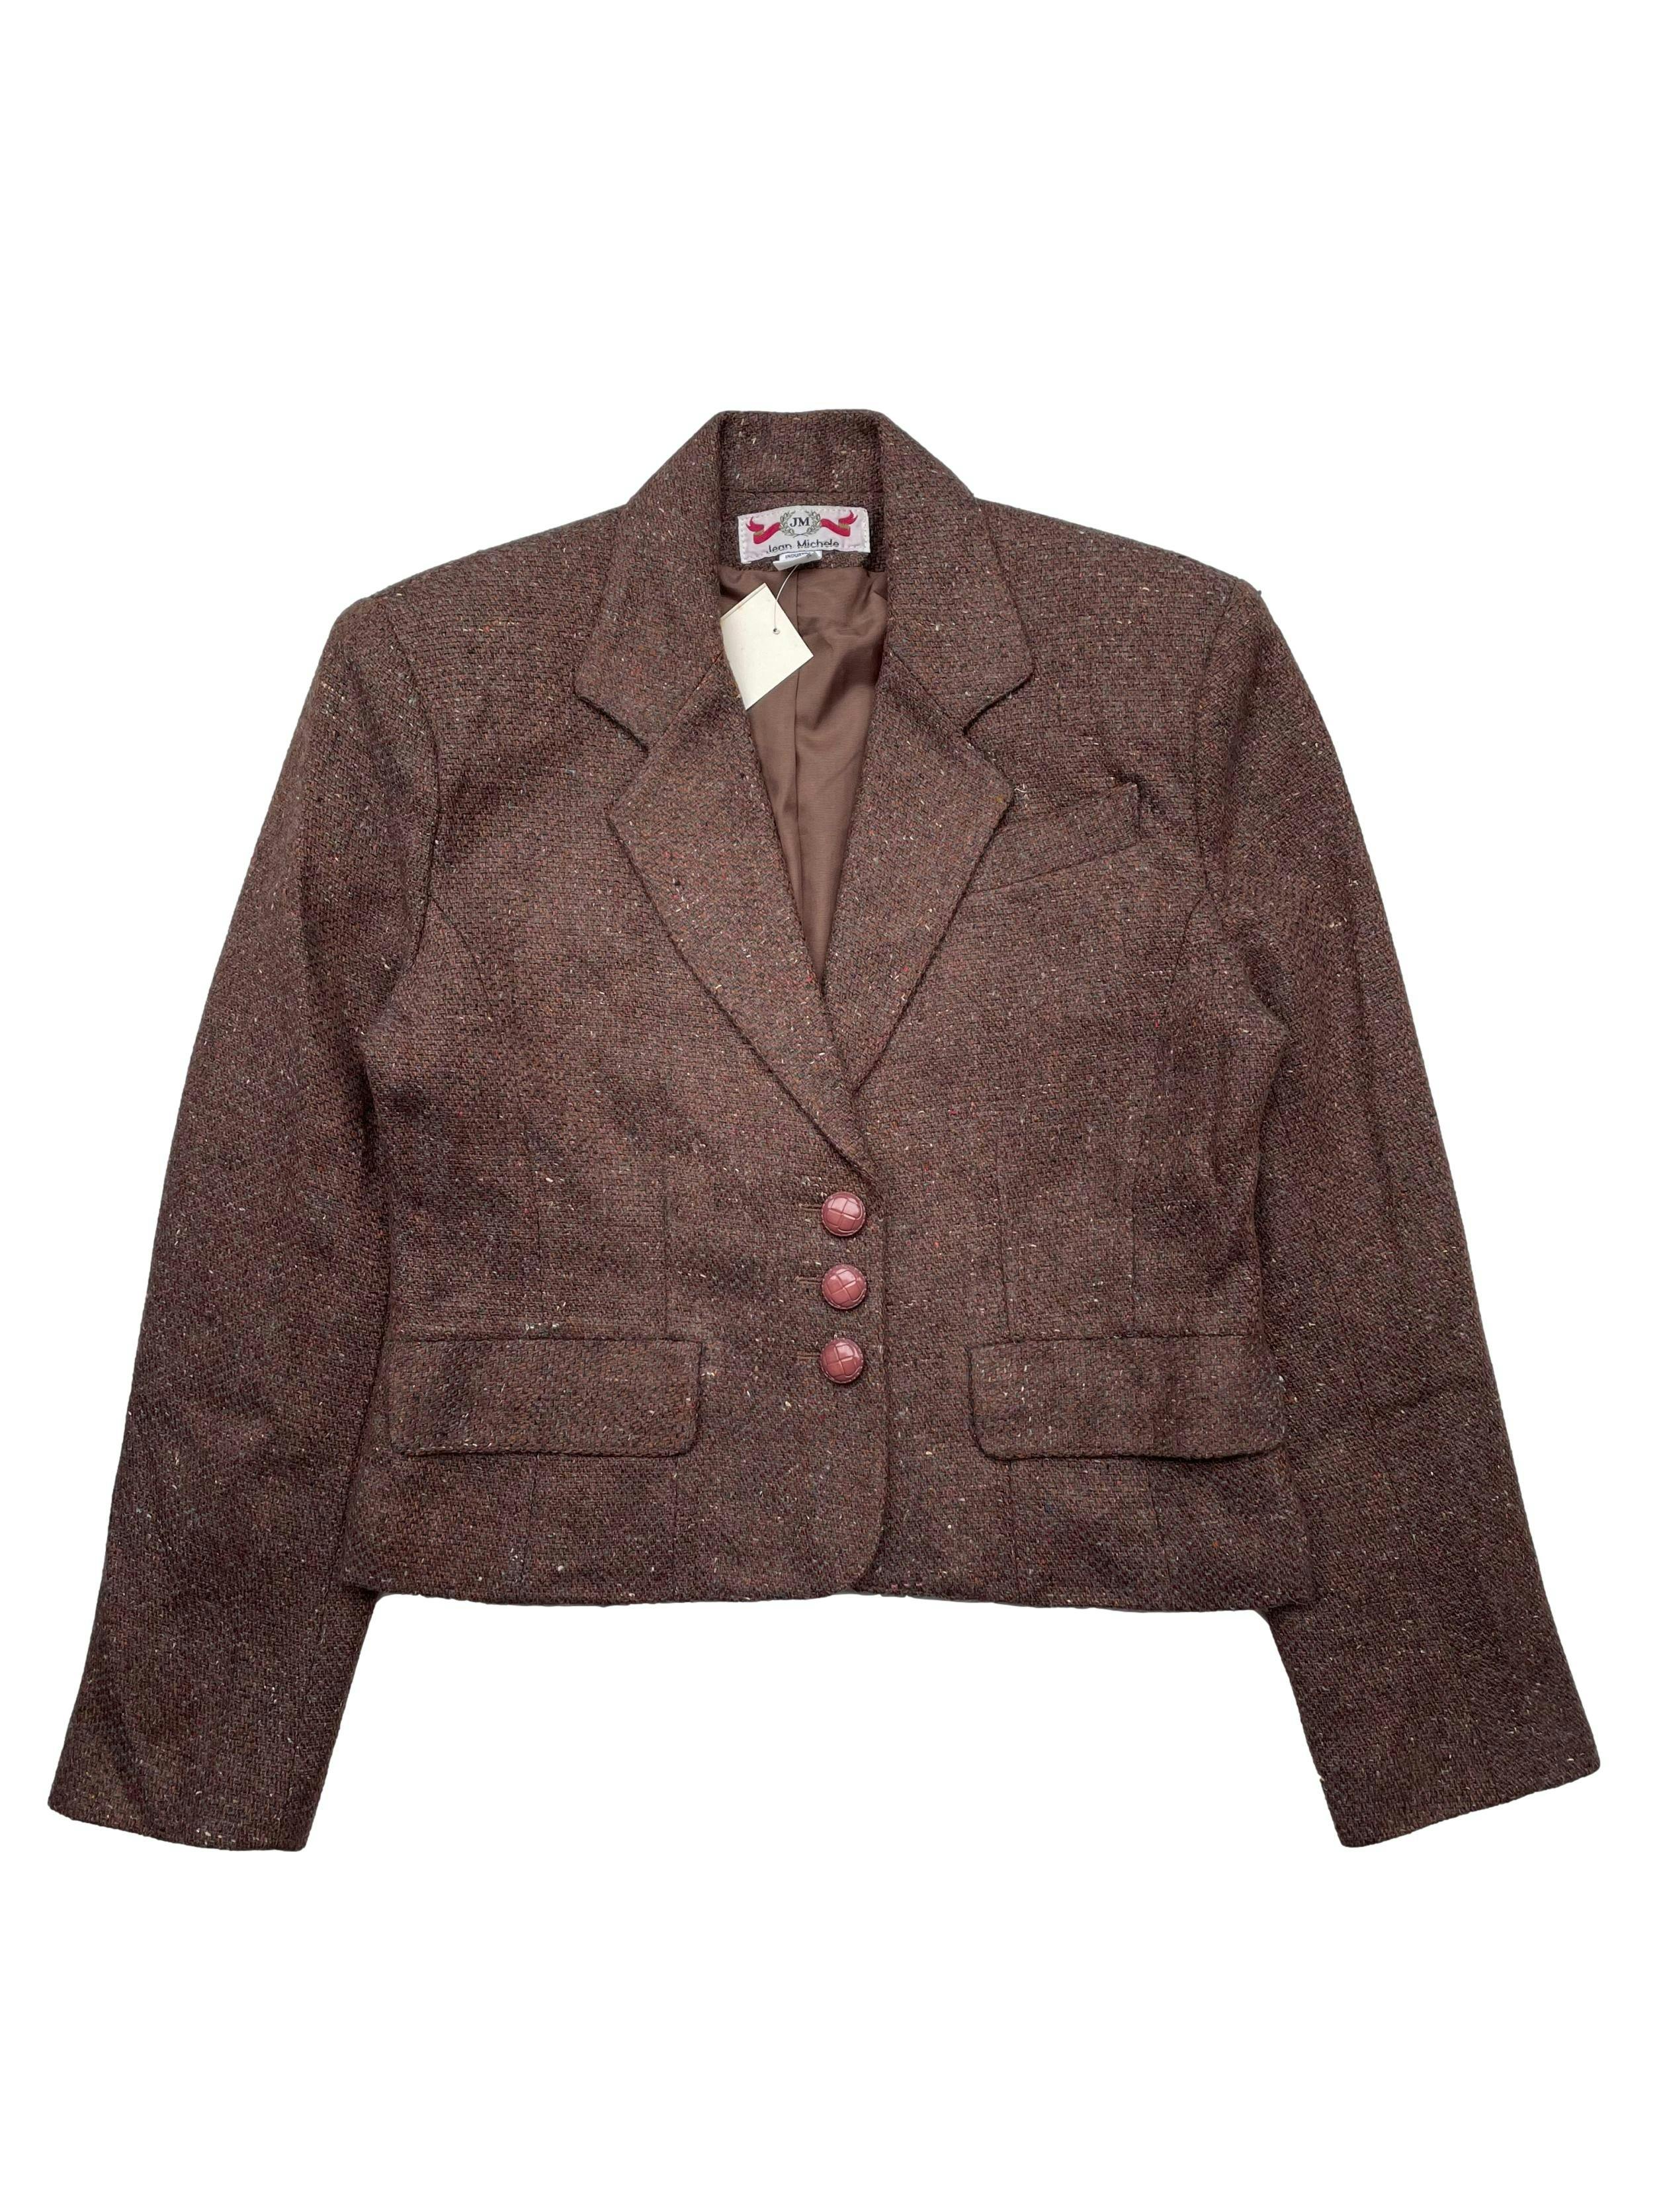 Saquito vintage marrón jaspeado 100% lana , con forro ,hombreras ,bolsillos y botones palo rosa. Marca argentina. Hombros 42cm, Largo 52cm.